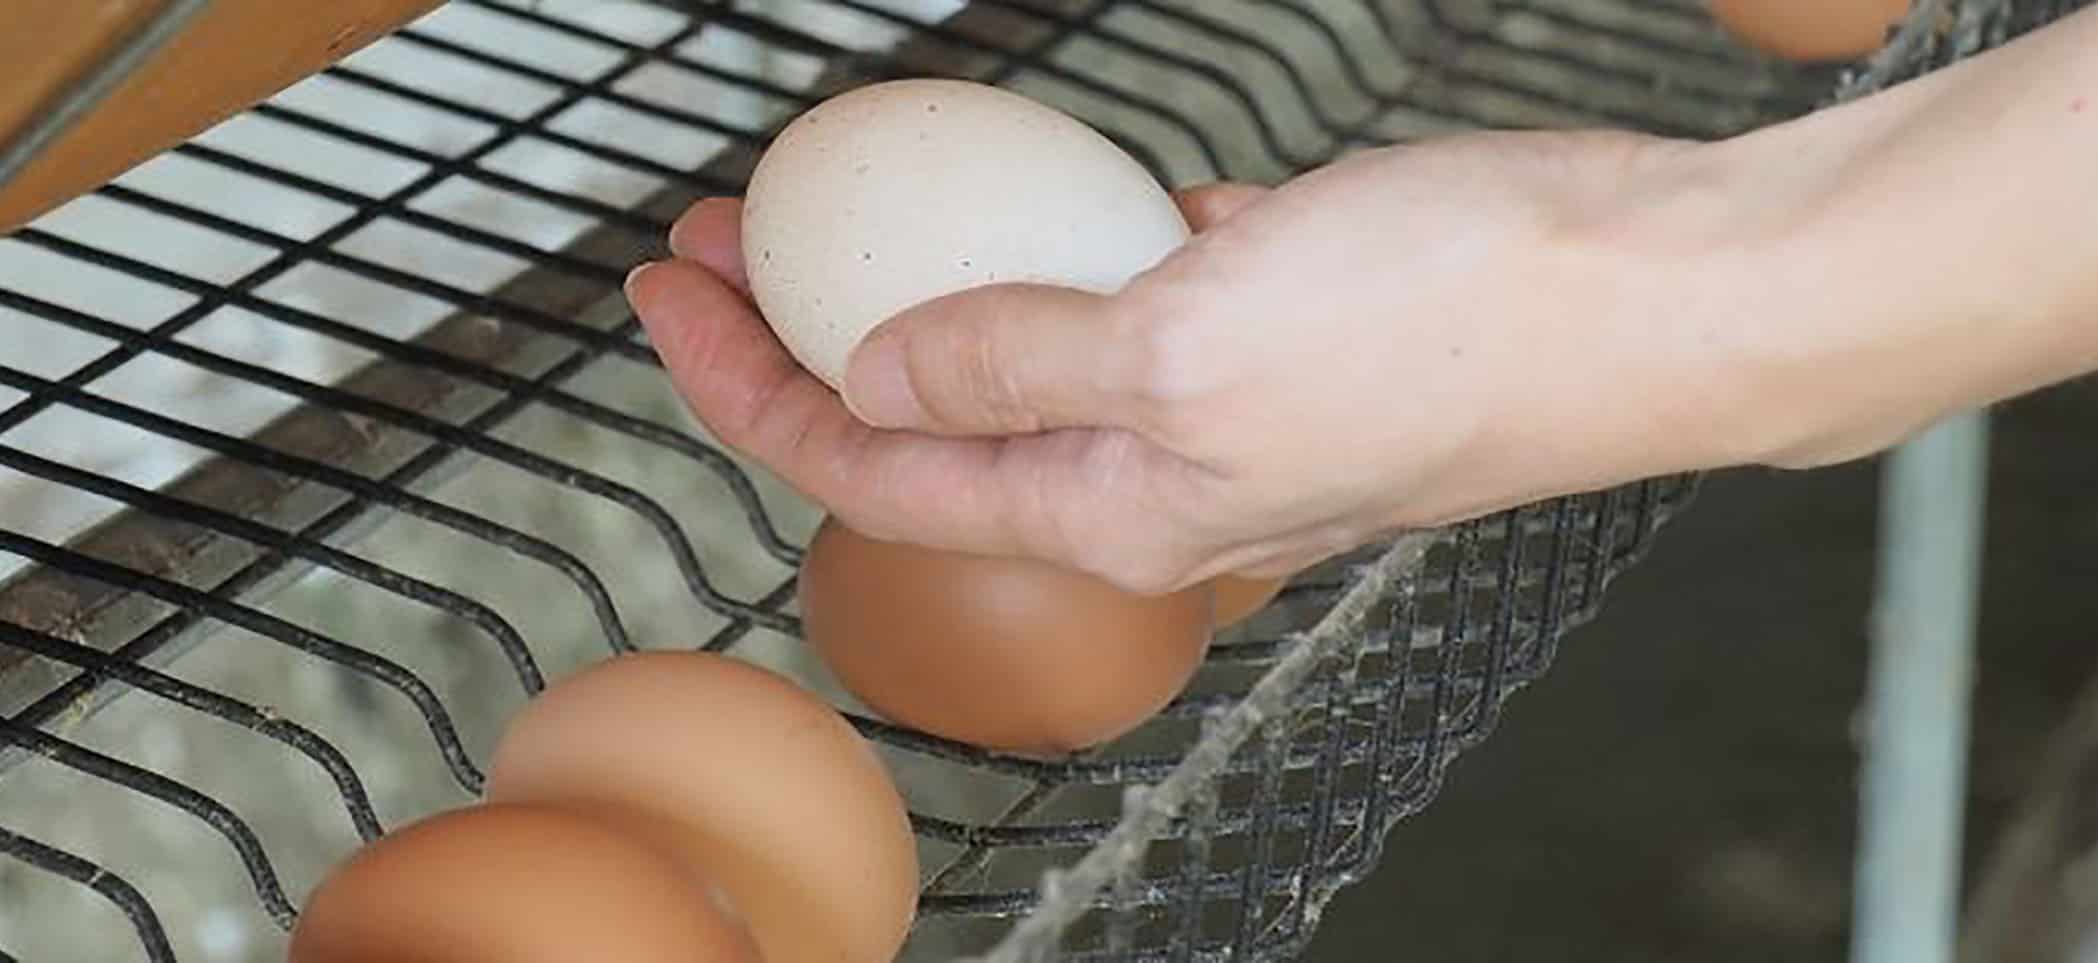 a hand holding an egg